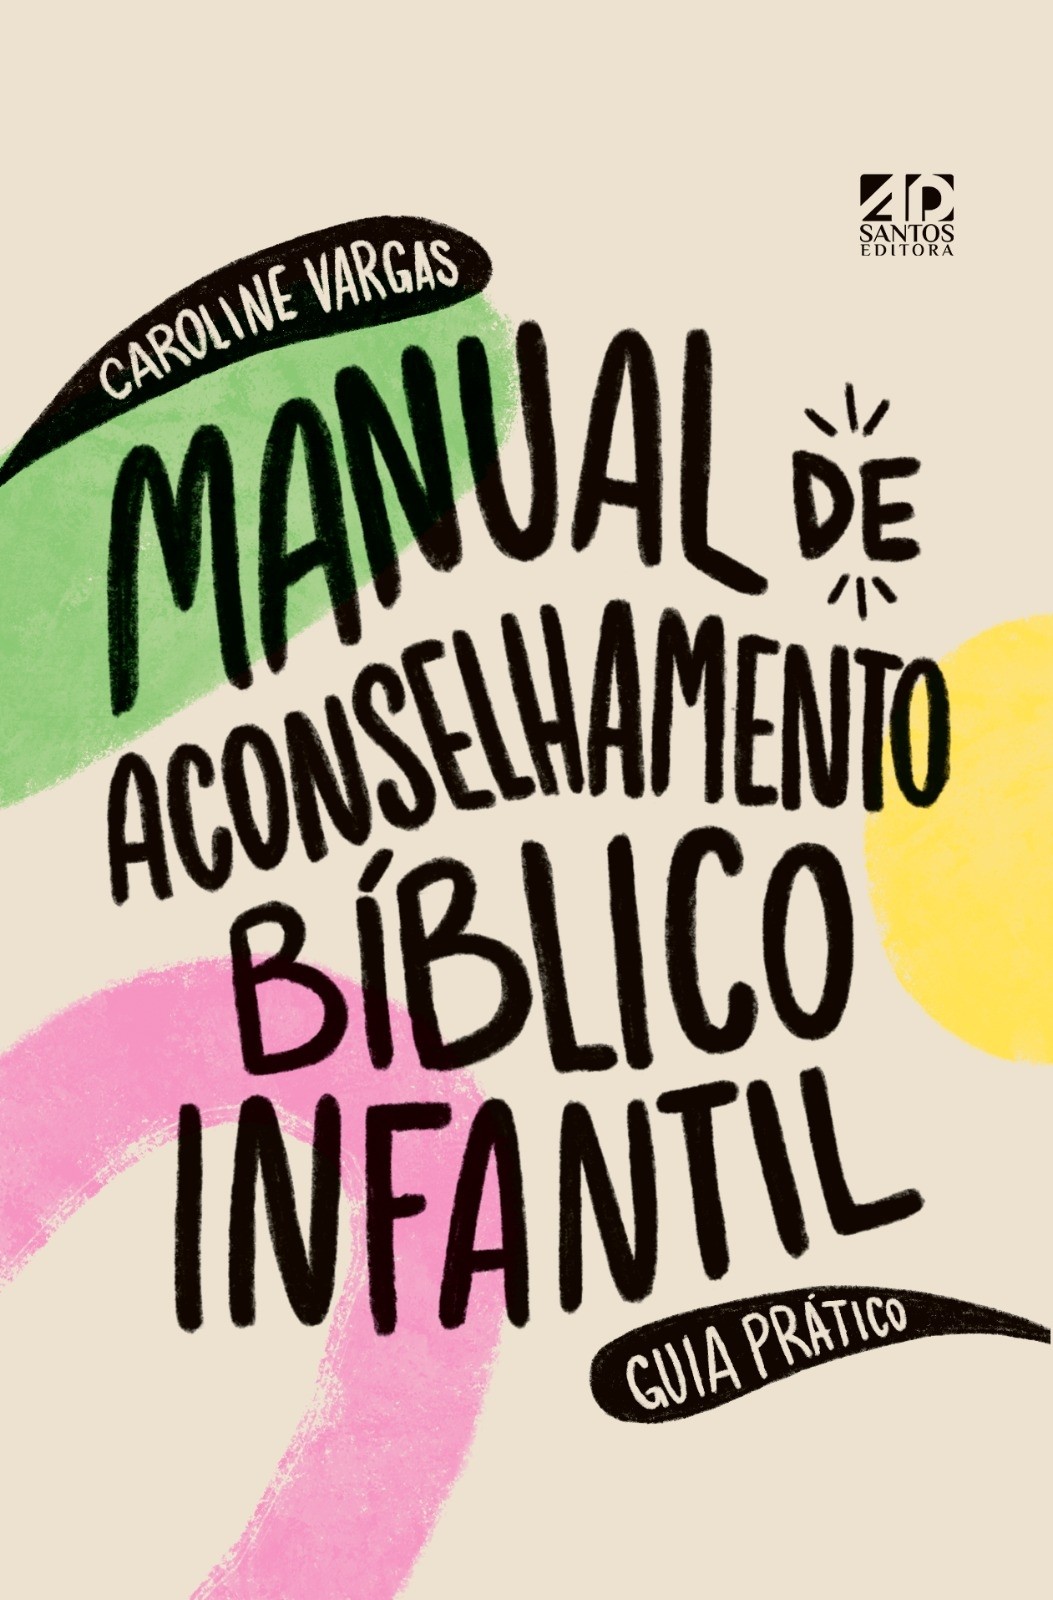 Manual de Aconselhamento Bíblico Infantil | Guia Prático | Caroline Vargas